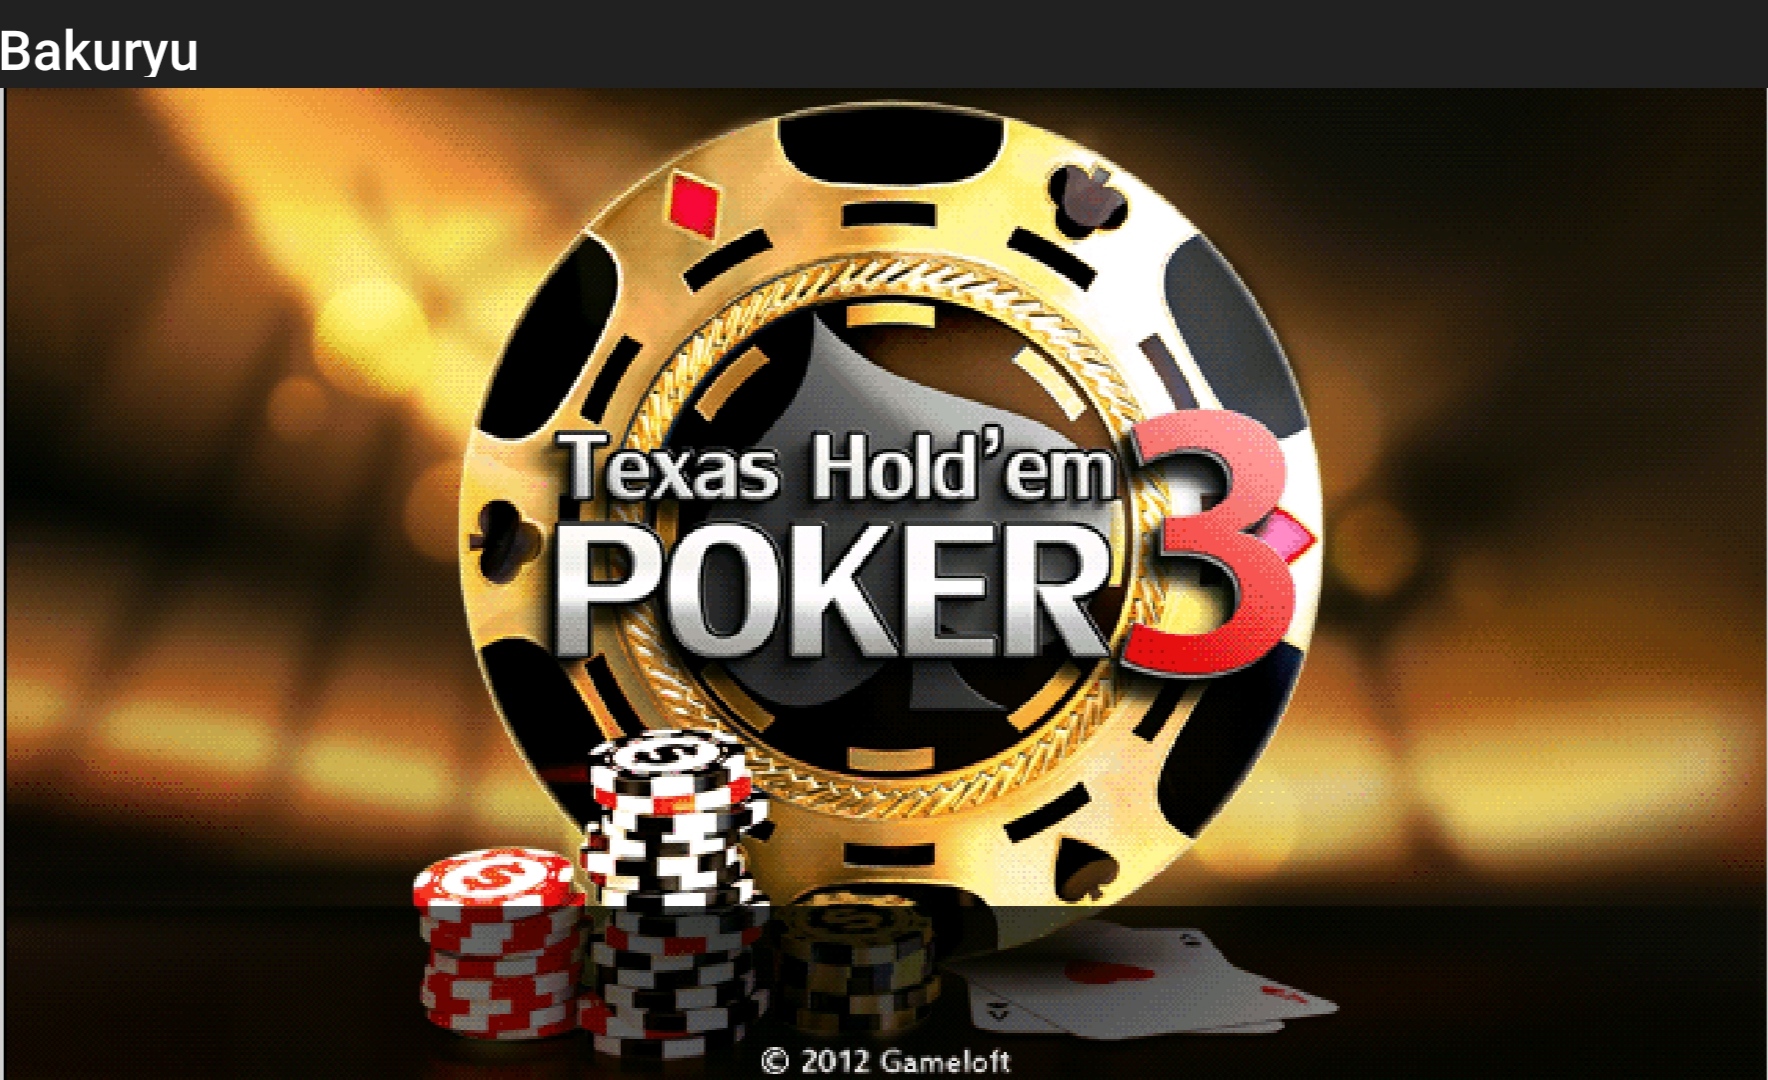 [SP Hack] Texas Hold'em Poker 3 Tiếng Việt Hack 999999999 Tiền By Bakuryu